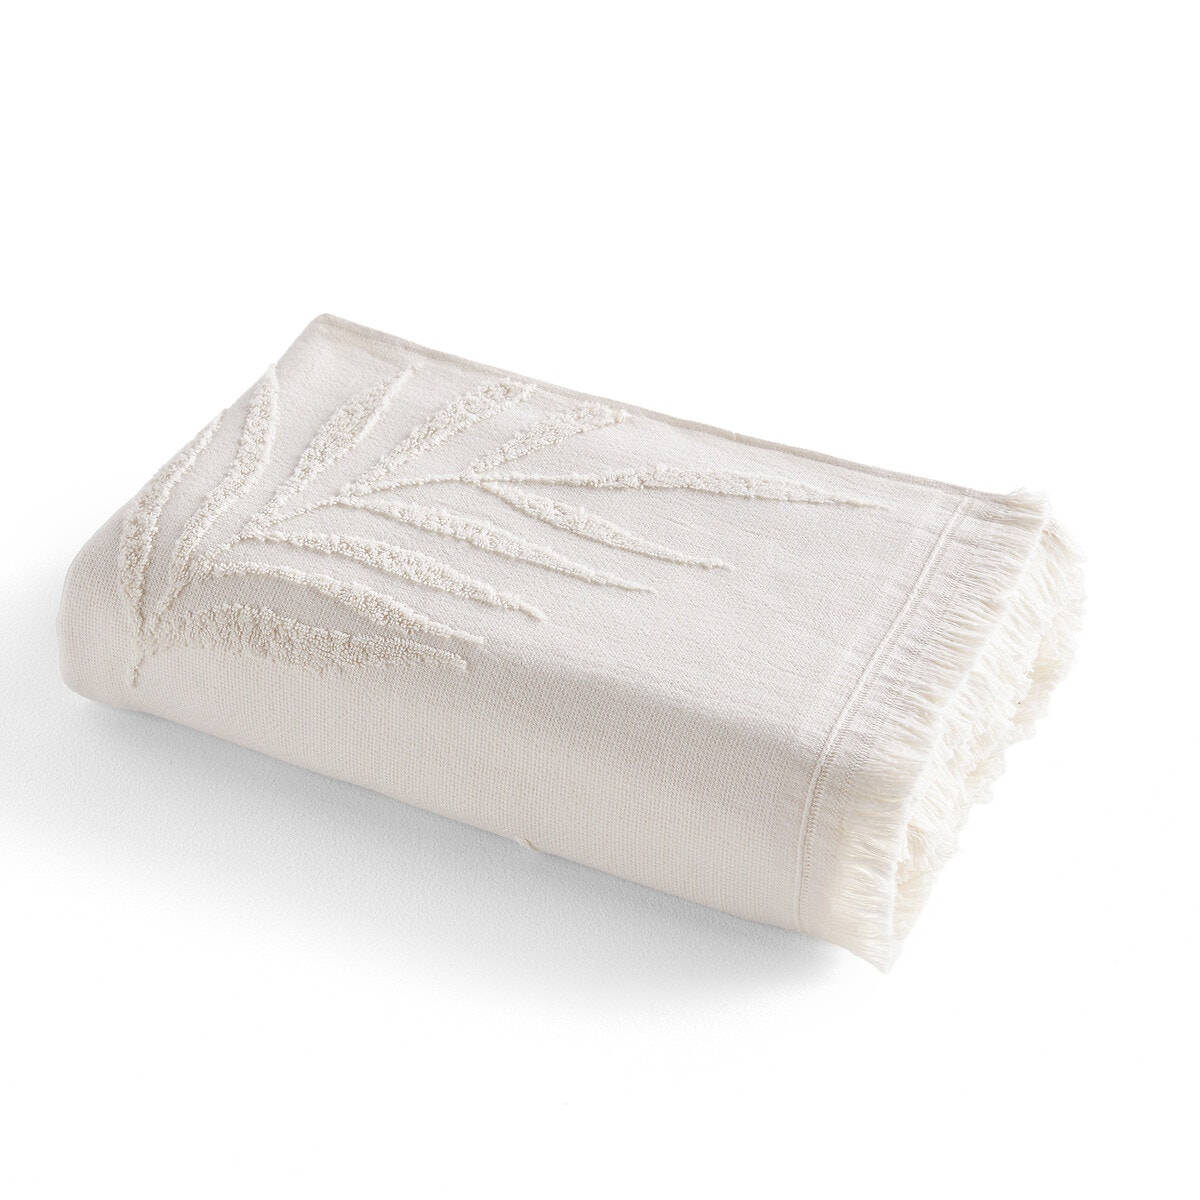 Σπίτι > Λευκά είδη > Μπάνιο > Πετσέτες προσώπου Πετσέτα από πετσετέ μπουκλέ ύφασμα 500 g m² 50x100 cm